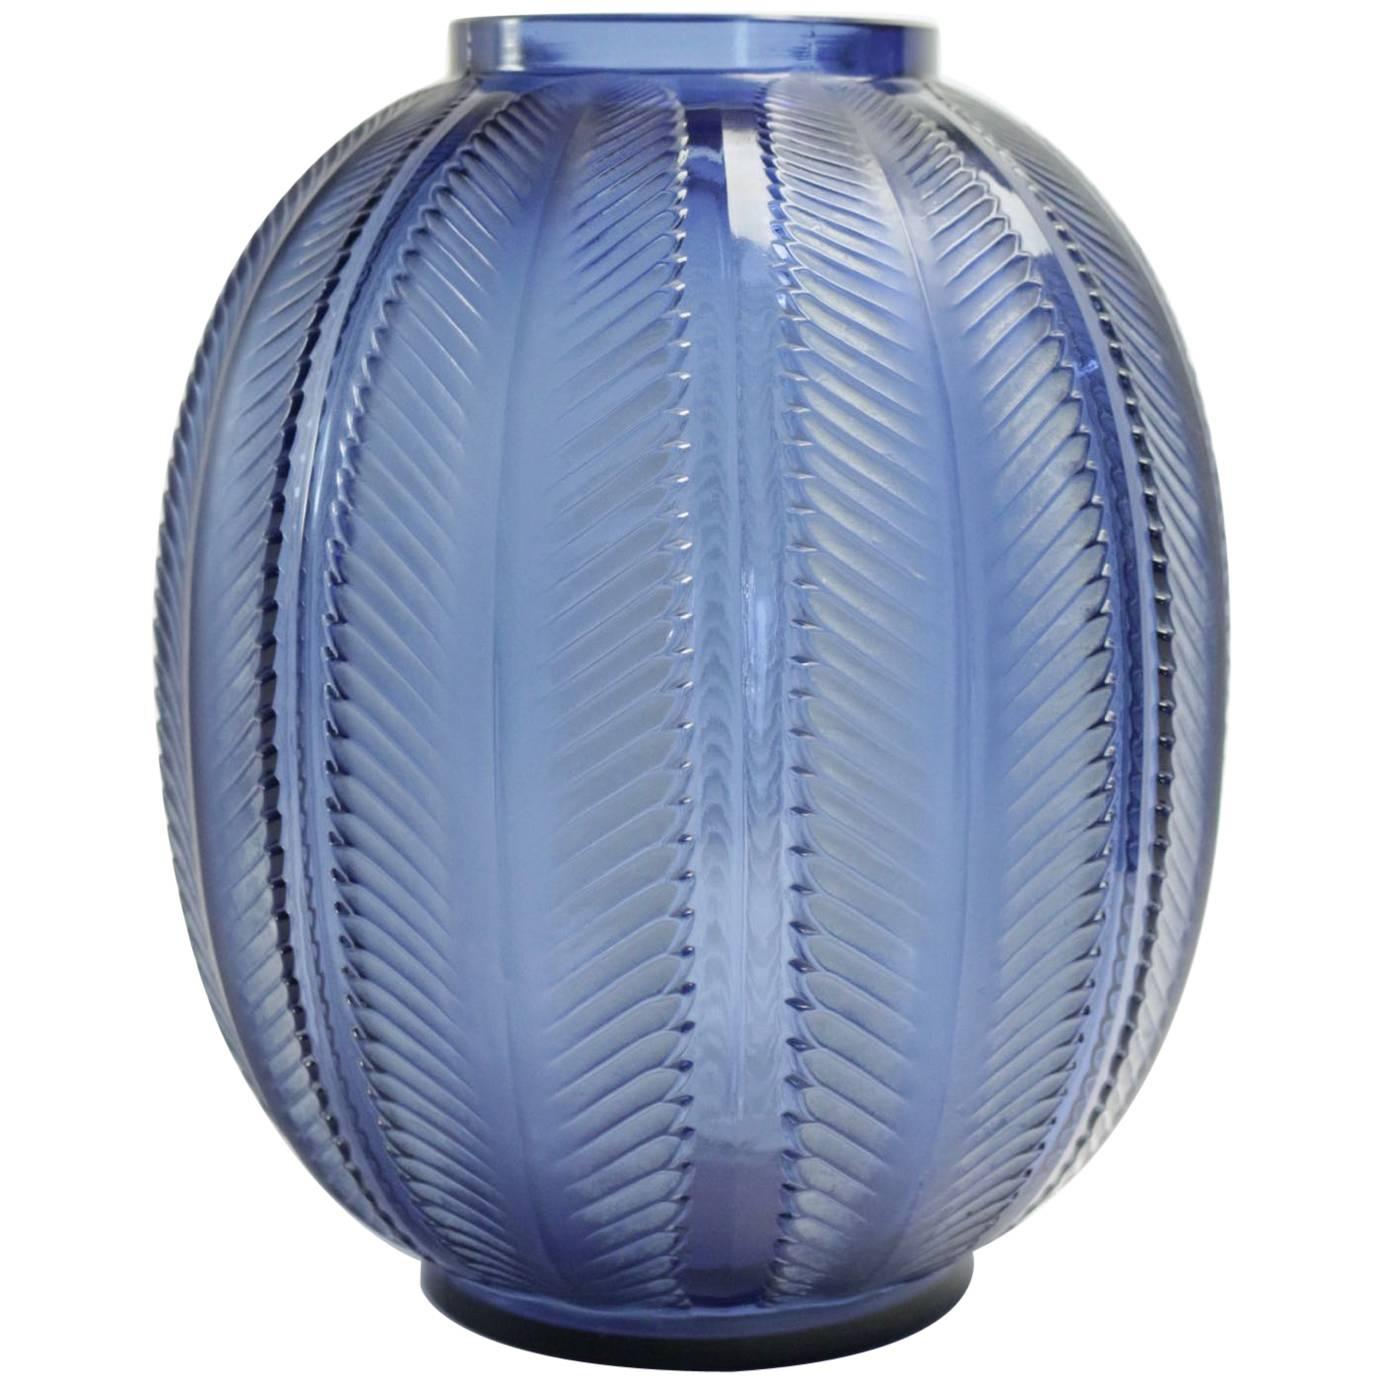 René Lalique "Biskra" Blue Vase